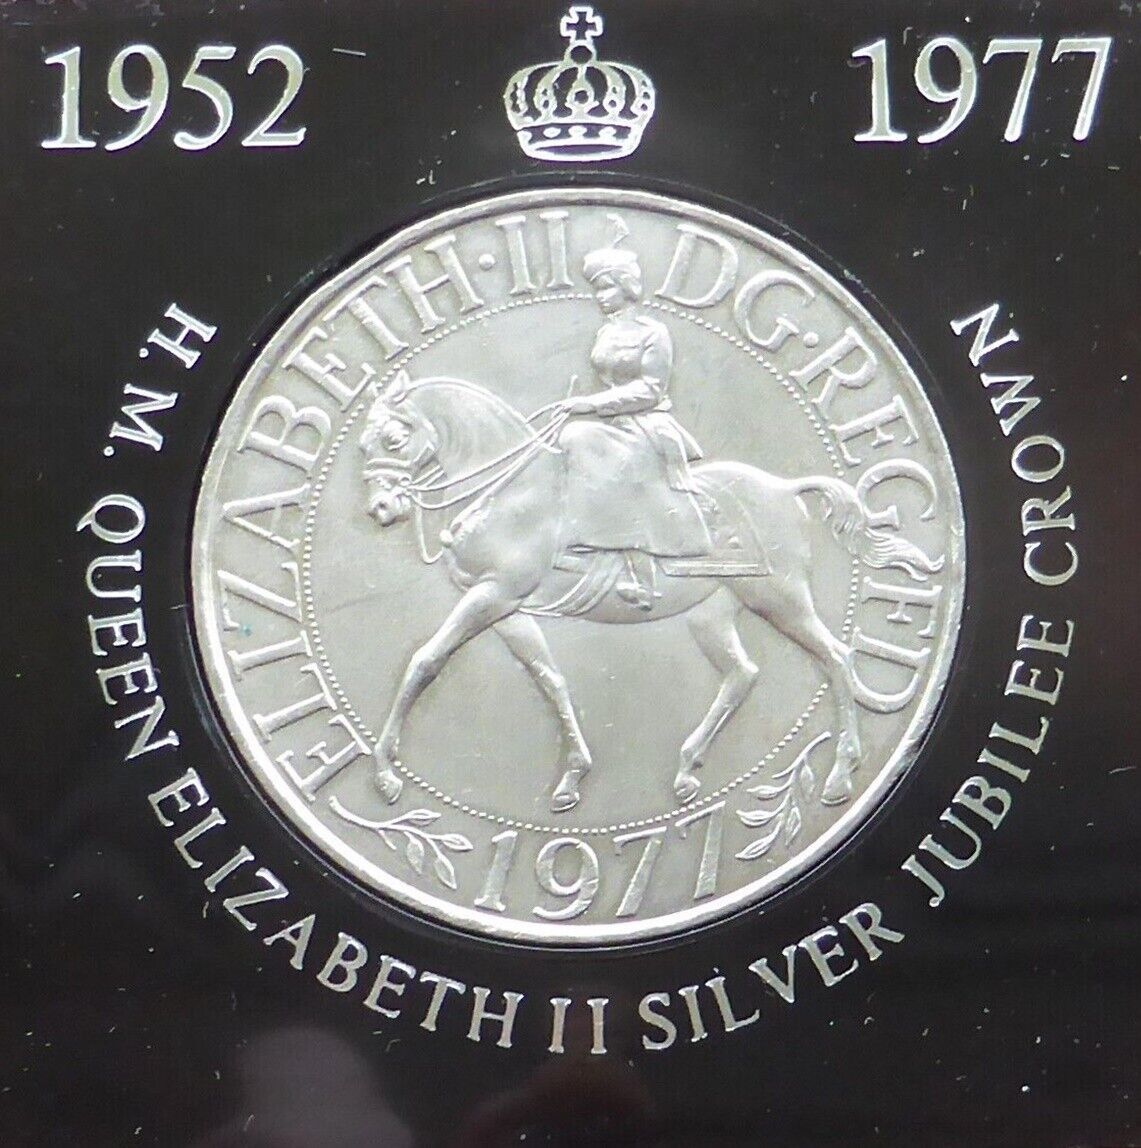 Royal Memorabilia Queen Elizabeth II Silver Jubilee 1952 - 1977 Crown Coin 